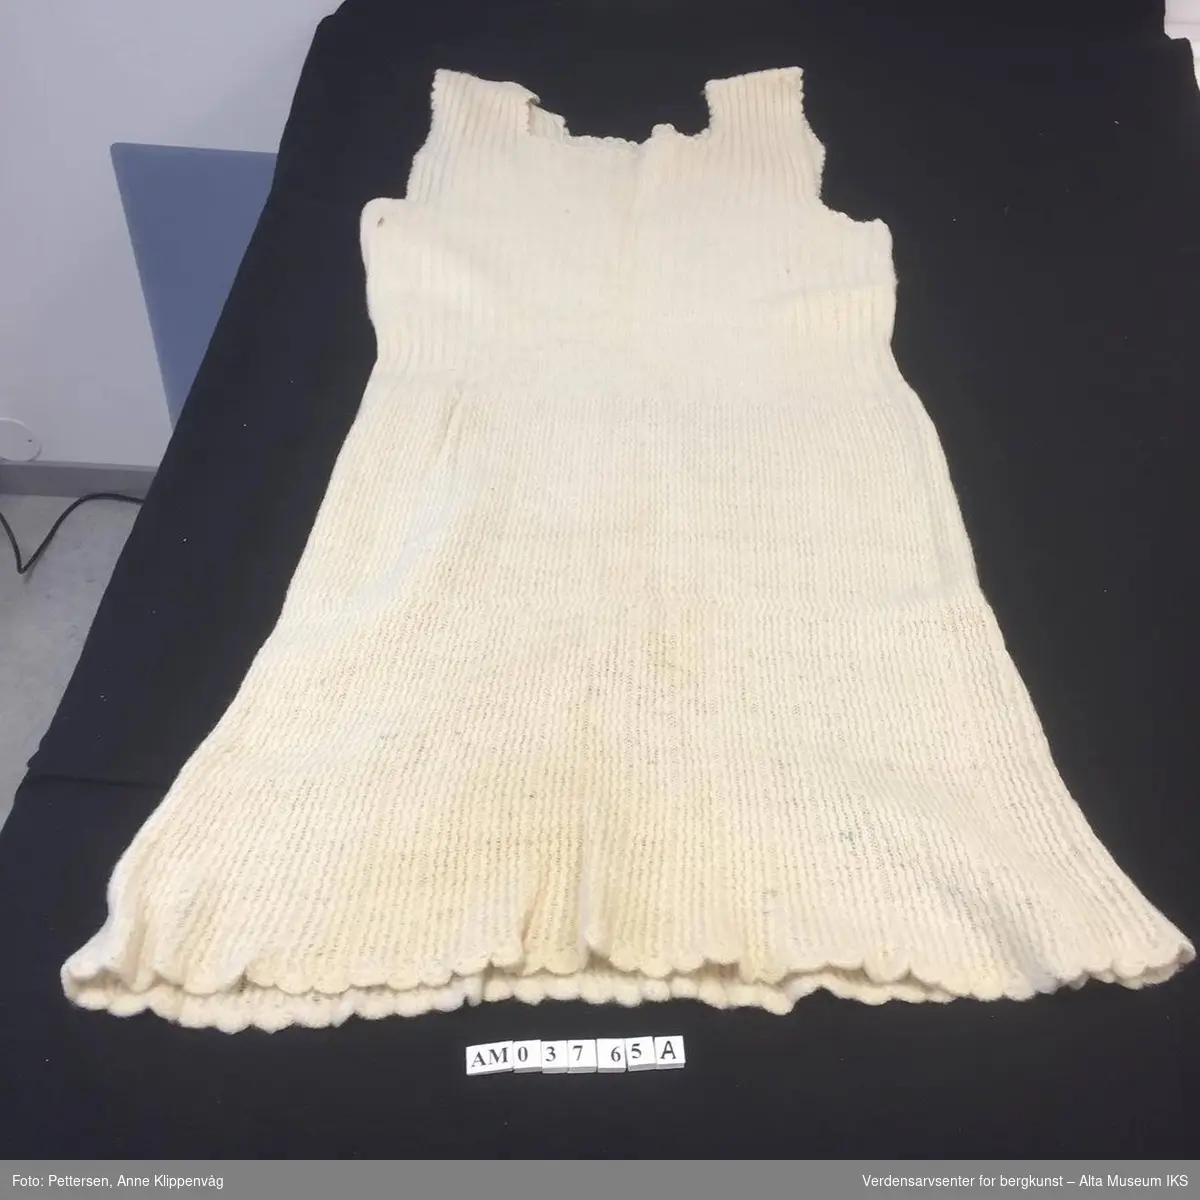 Tre produkter fra strikkemaskinen i samme gruppering:
AM.03765.A: Kjole. Hvitfarget og ermeløs kjole. Ribbestrikket mønster. Heklede kanter langs kjolens nederste kant. 
AM.03765.B: Et avklippet, hvitt gensererme. 
AM.03765.C: Et grått sokkpar.